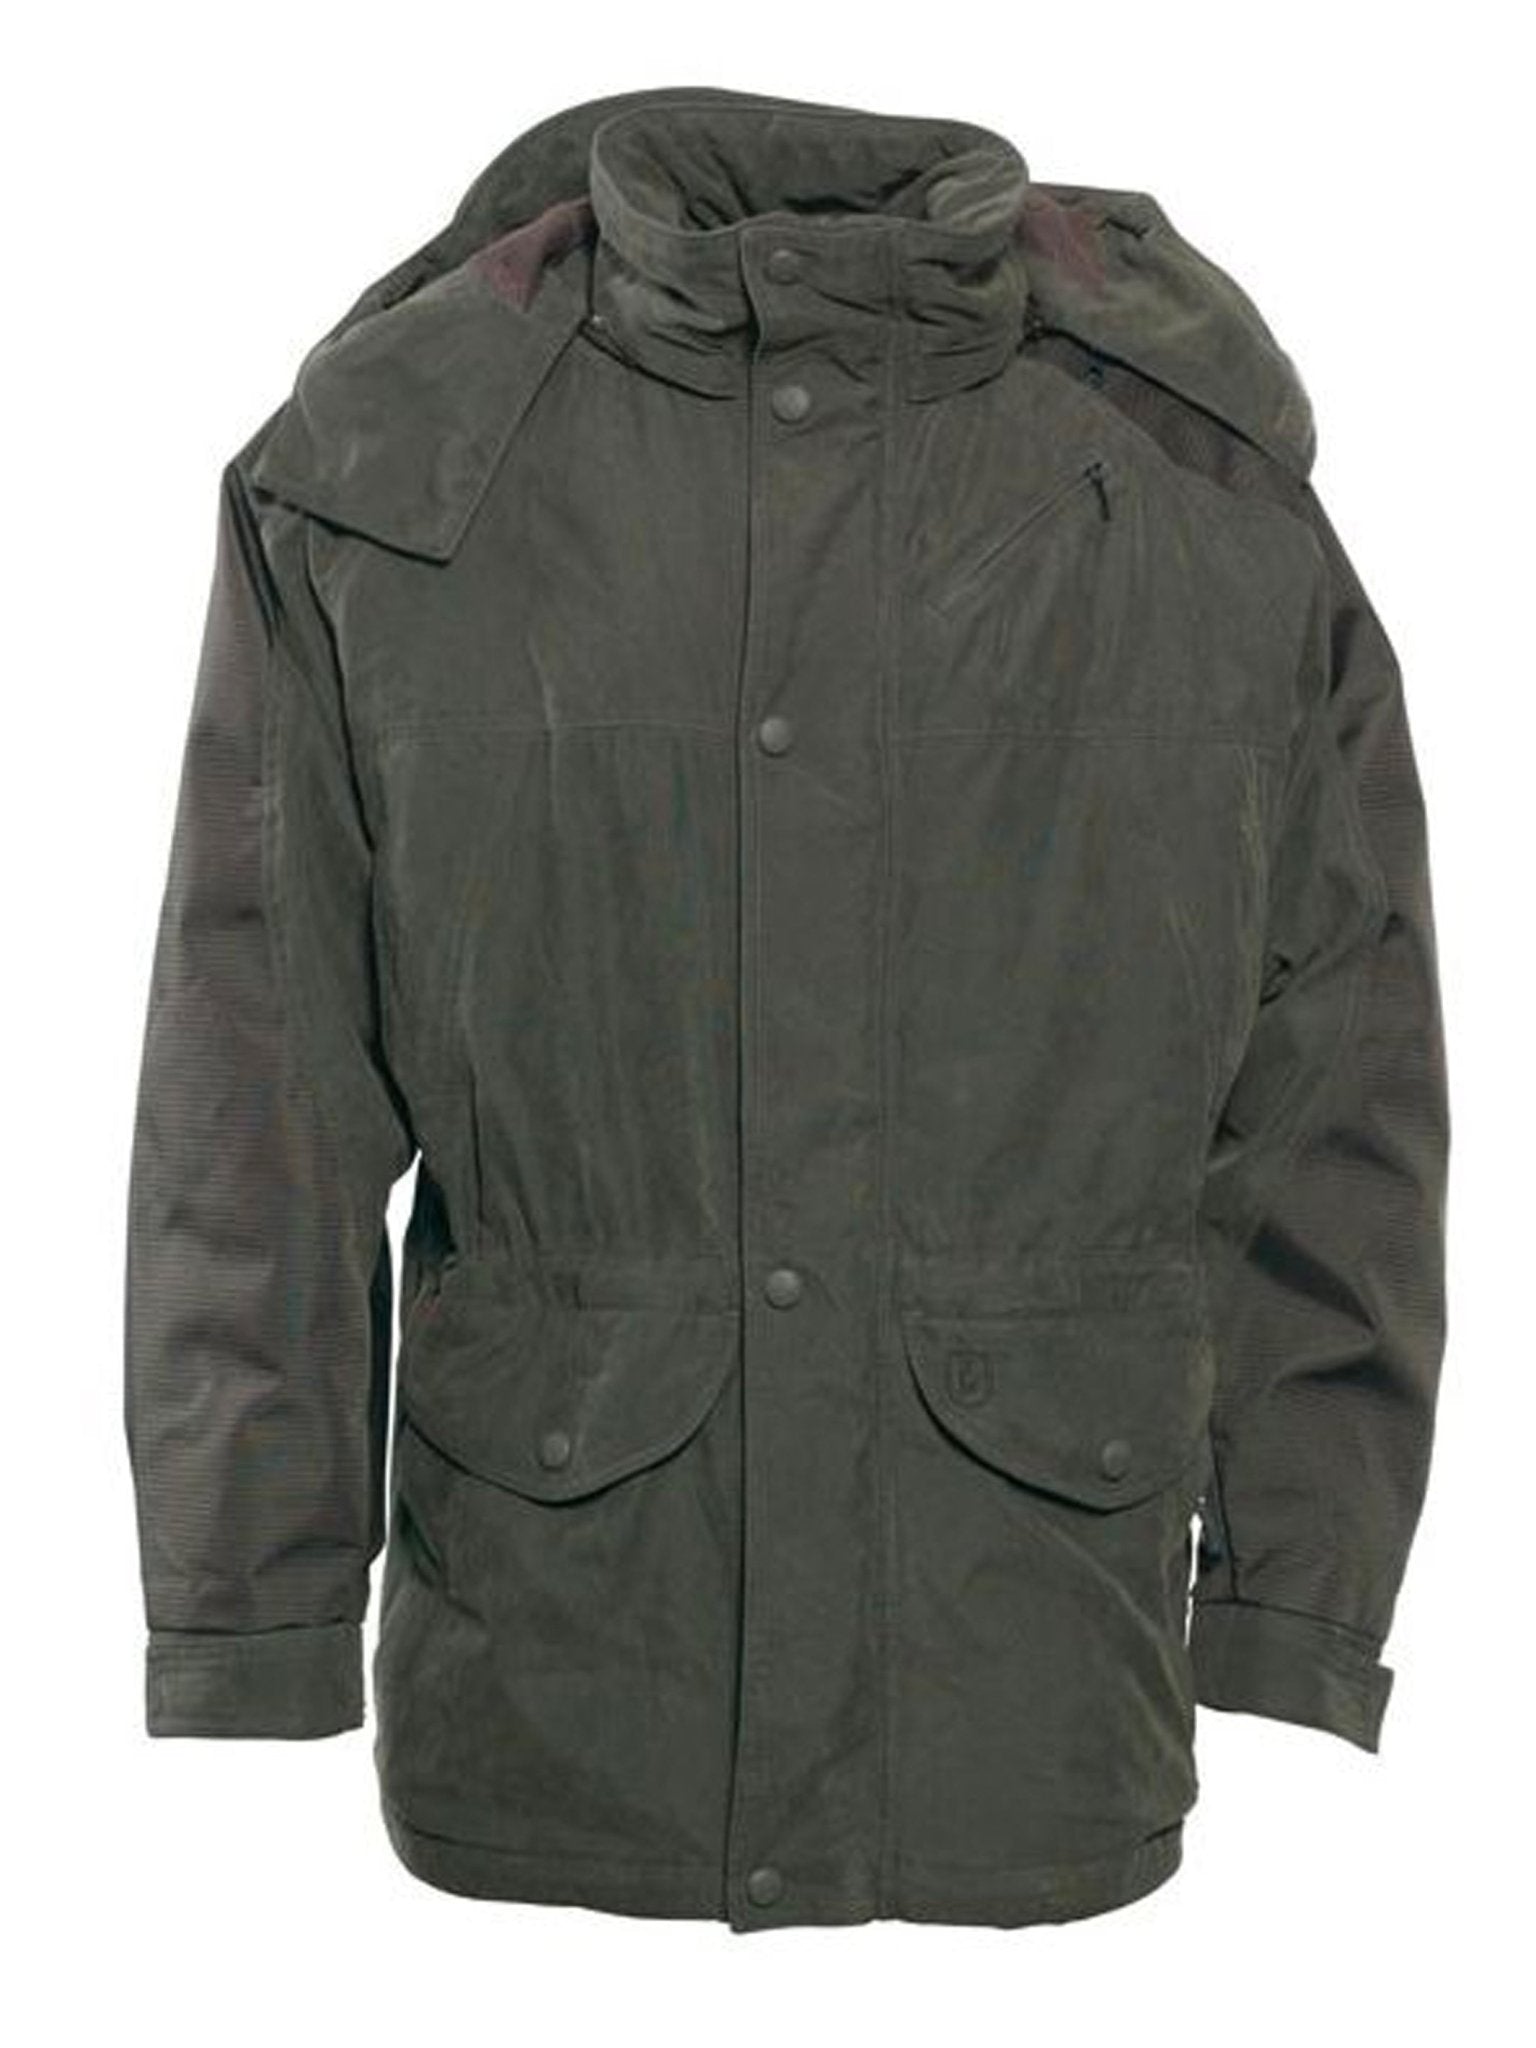 4elementsclothingDeerhunterDeerhunter - Smallville Mens Waterproof Jacket / Coat - Windproof / waterproof hunting jacketOuterwear5347-382-48